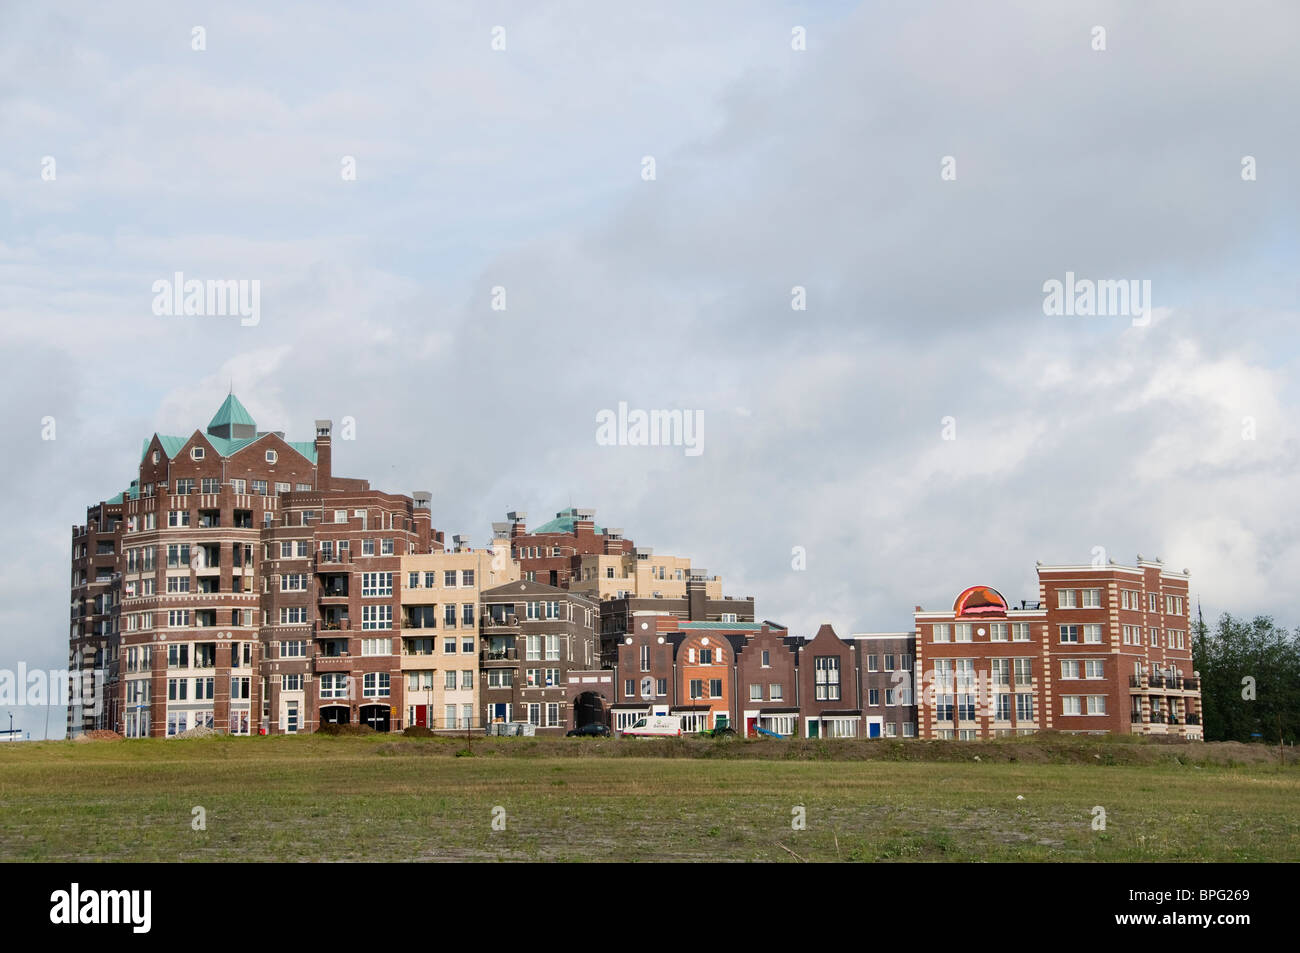 Lelystad capitale de la province de Flevoland construit sur un terrain qui a été fondée en 1967 Batavia Stad Banque D'Images